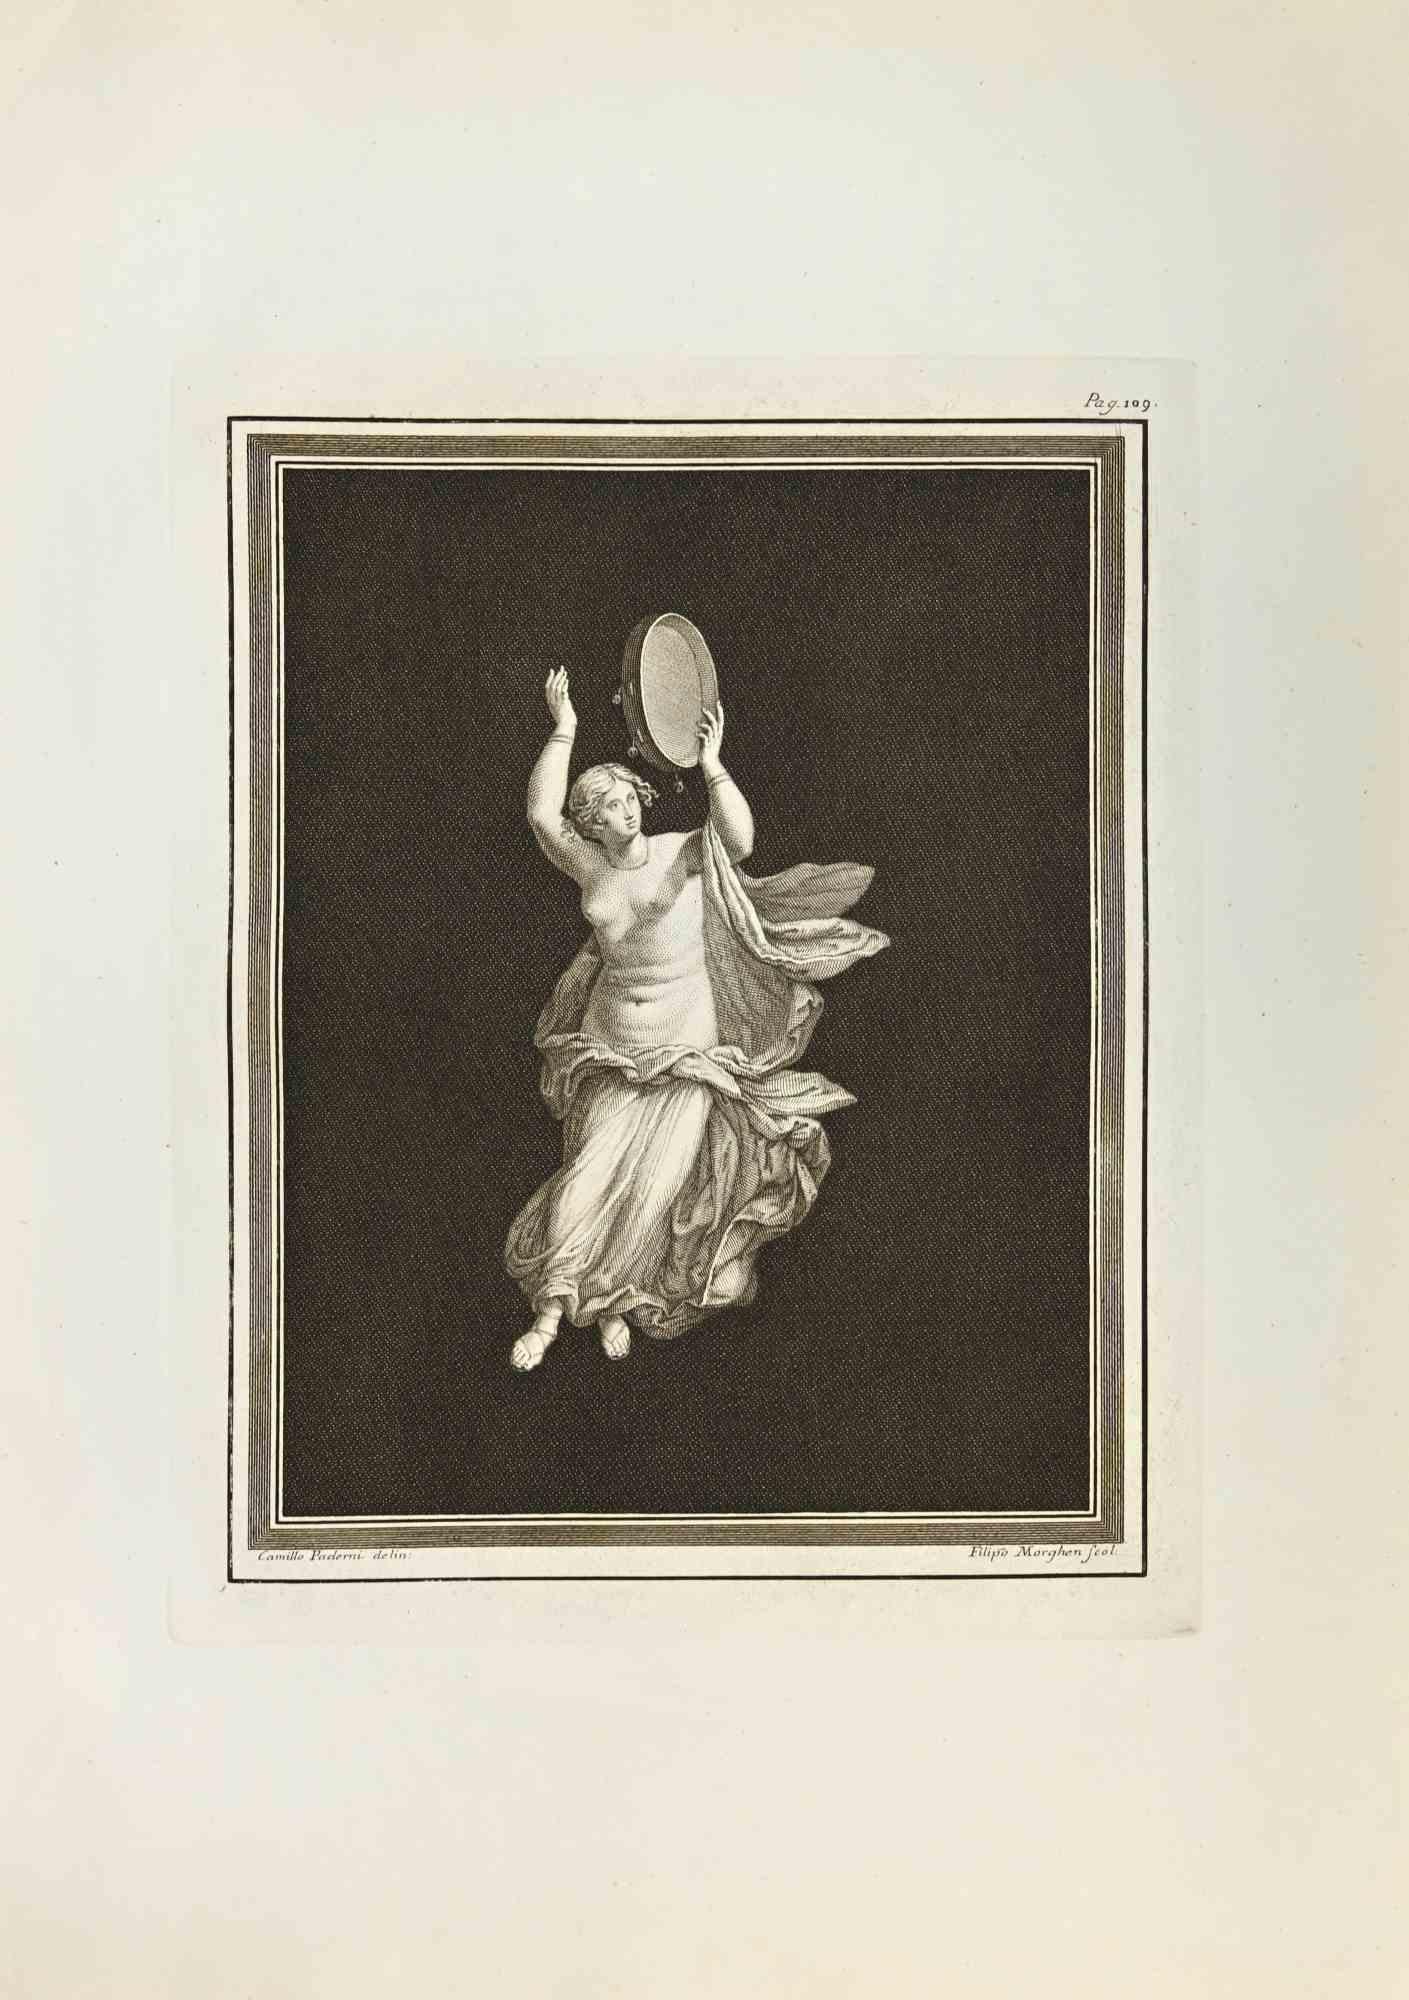 Le joueur des "Antiquités d'Herculanum" est une gravure sur papier réalisée par Filippo Morghen au 18ème siècle.

Signé sur la plaque.

Bonnes conditions avec quelques plis dus à l'époque.

La gravure appartient à la suite d'estampes "Antiquités